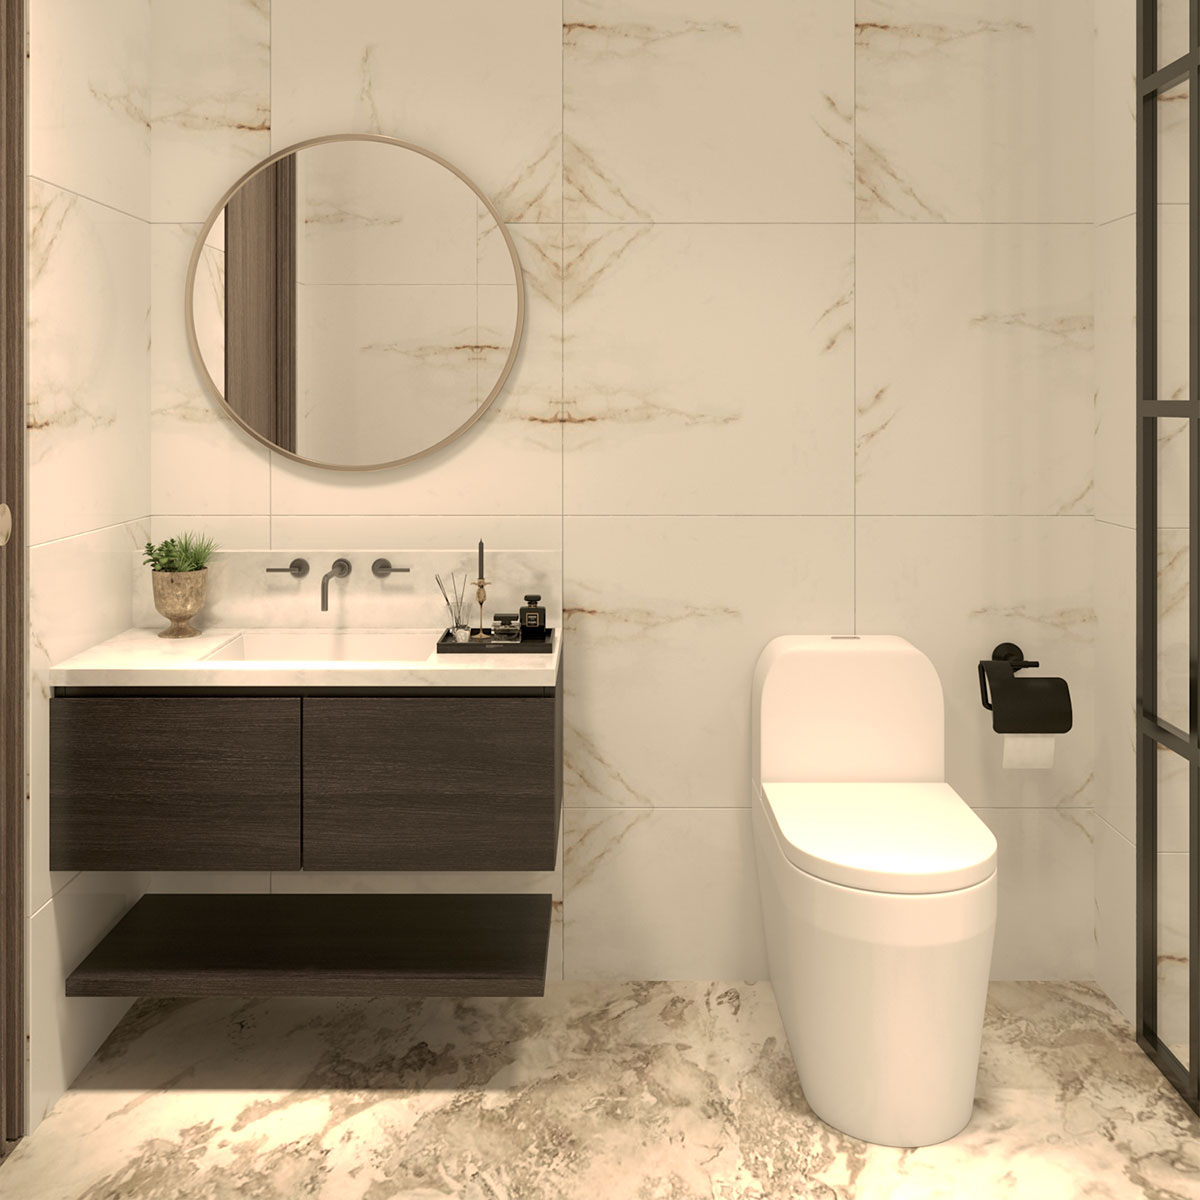 Phòng tắm 5 sao theo thiết kế Paris của dghome.